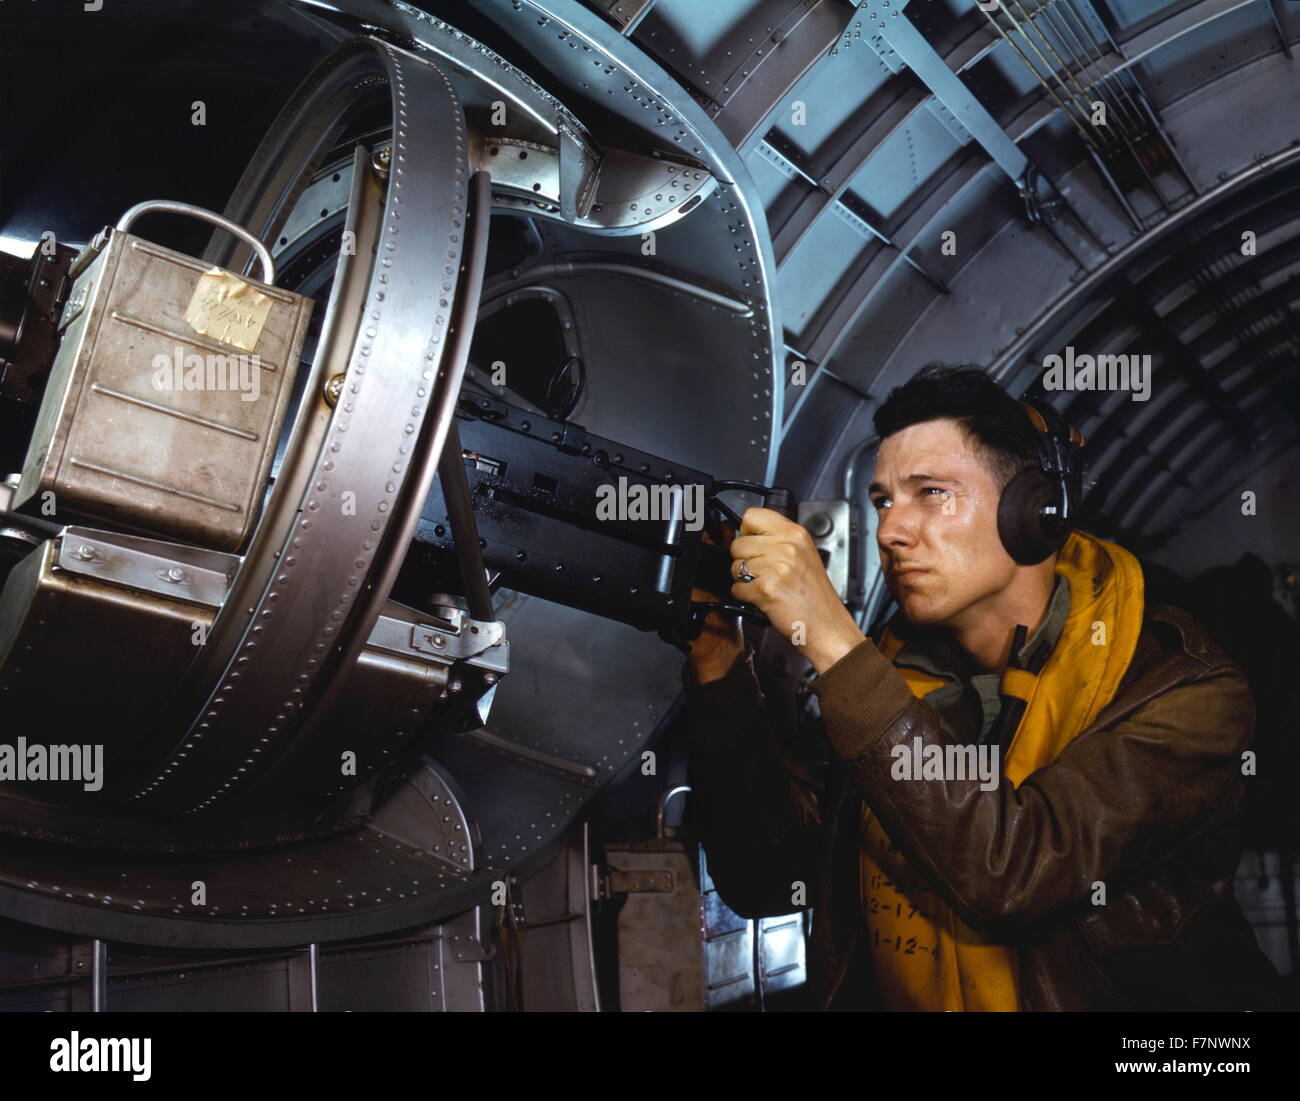 À l'aide d'un aviateur américain une mitrailleuse côté d'un bombardier B-17 Flying Fortress, mai 1942. La seconde guerre mondiale Banque D'Images